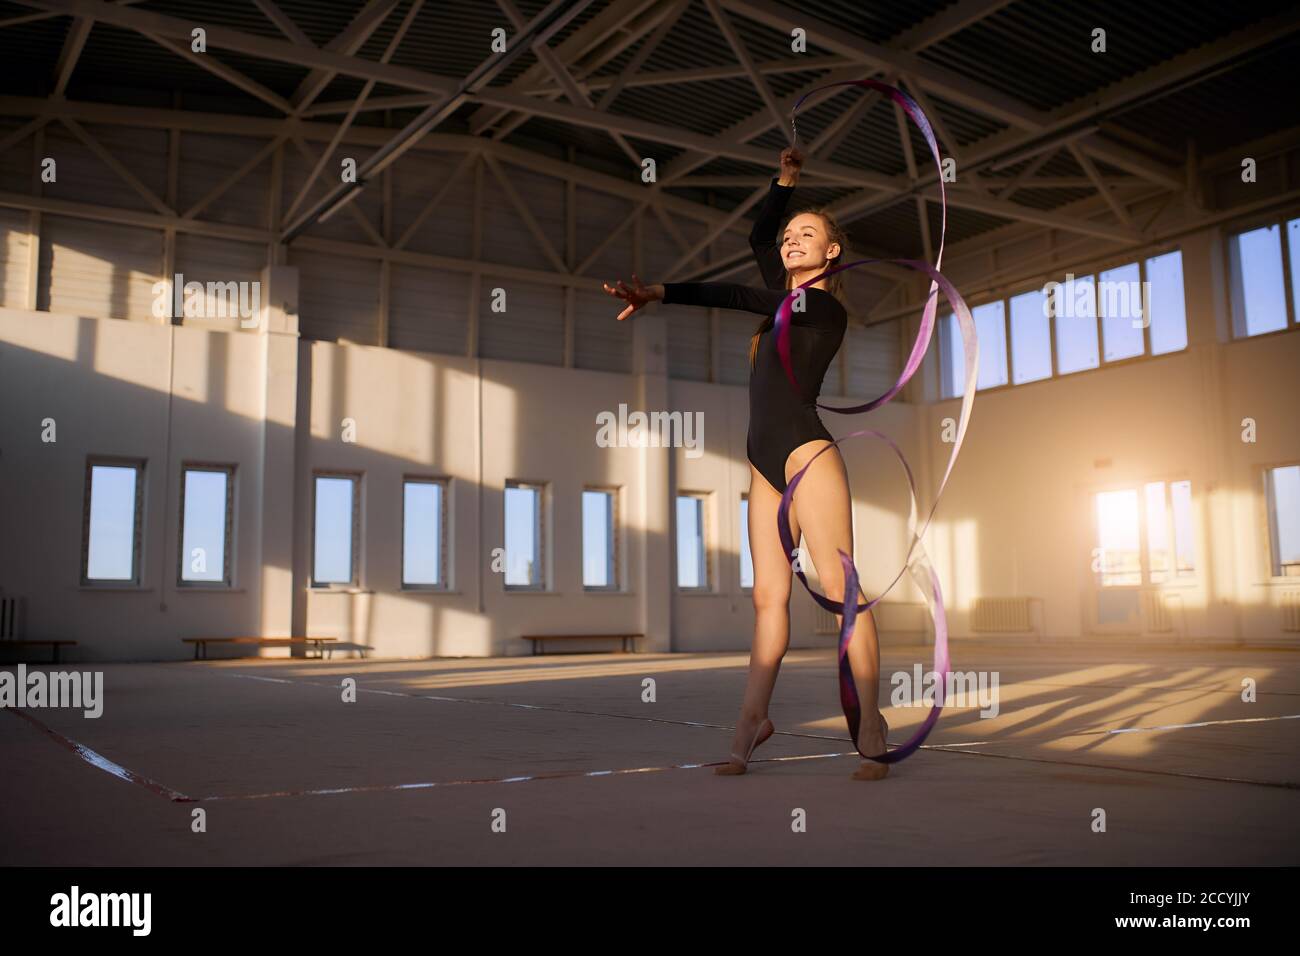 Spielerisch fröhlich weibliche Turnerin Durchführung rhythmische Gymnastik Element auf Wettbewerb, Tanz mit bunten Band, Stretching Hand voraus, Blick auf ein Stockfoto